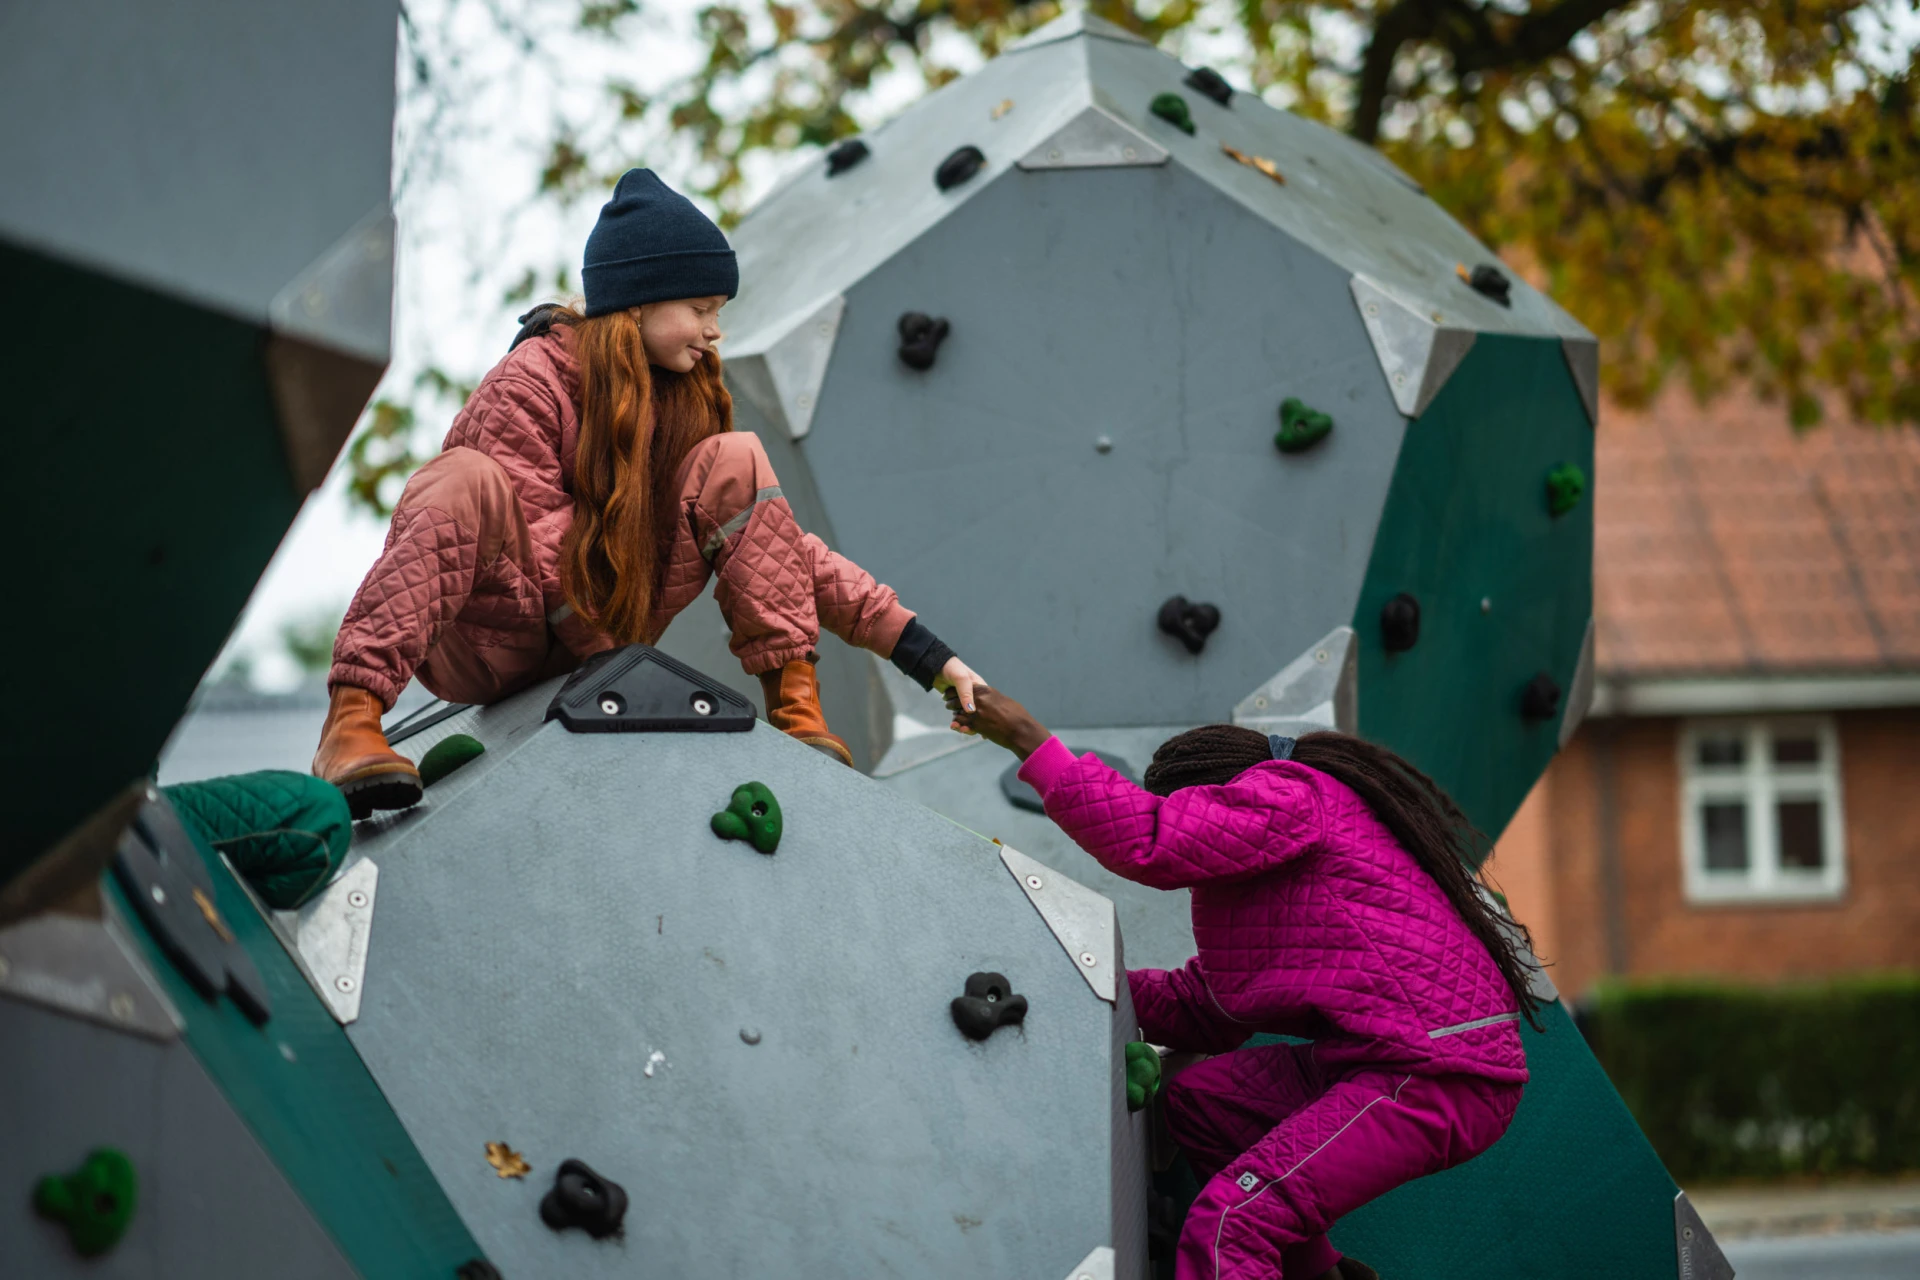 En pige hjælper en anden pige med at klatre op på en klatrestruktur på en legeplads.